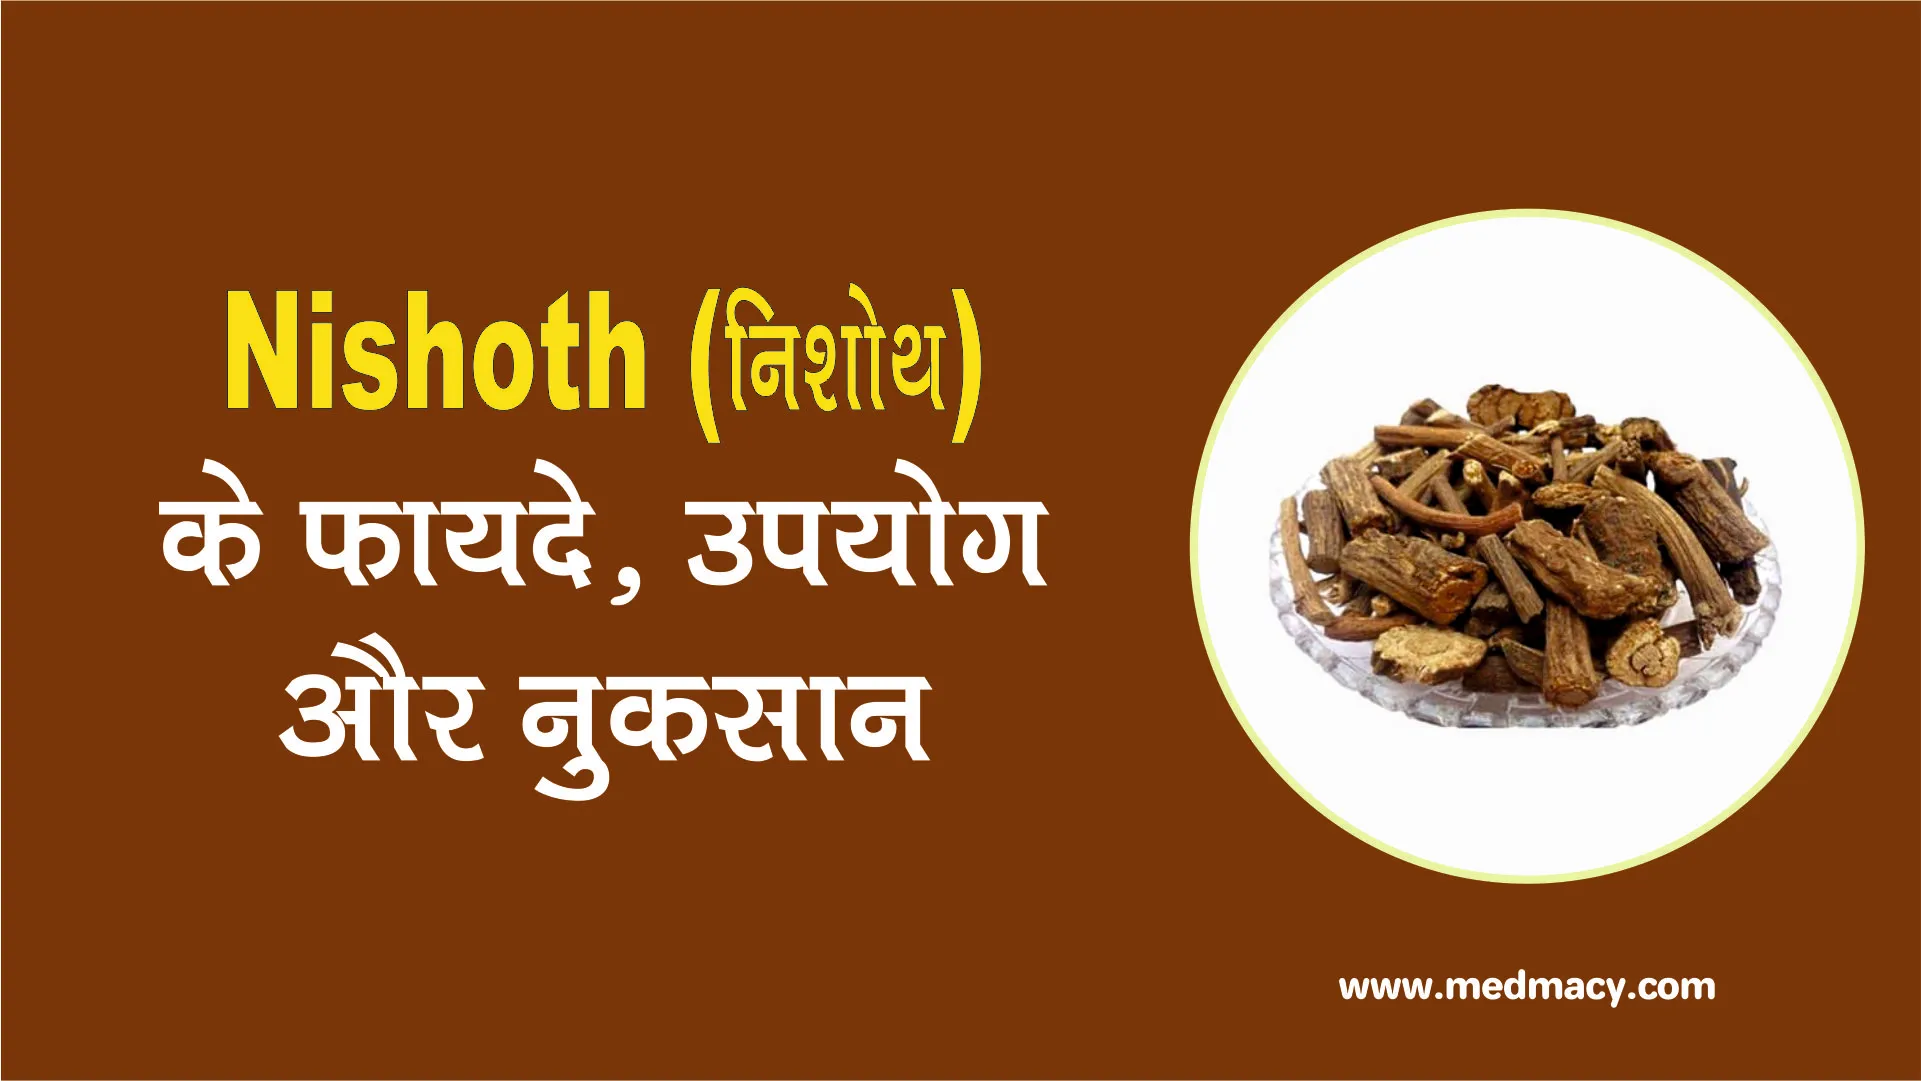 Nishoth Benefits in Hindi